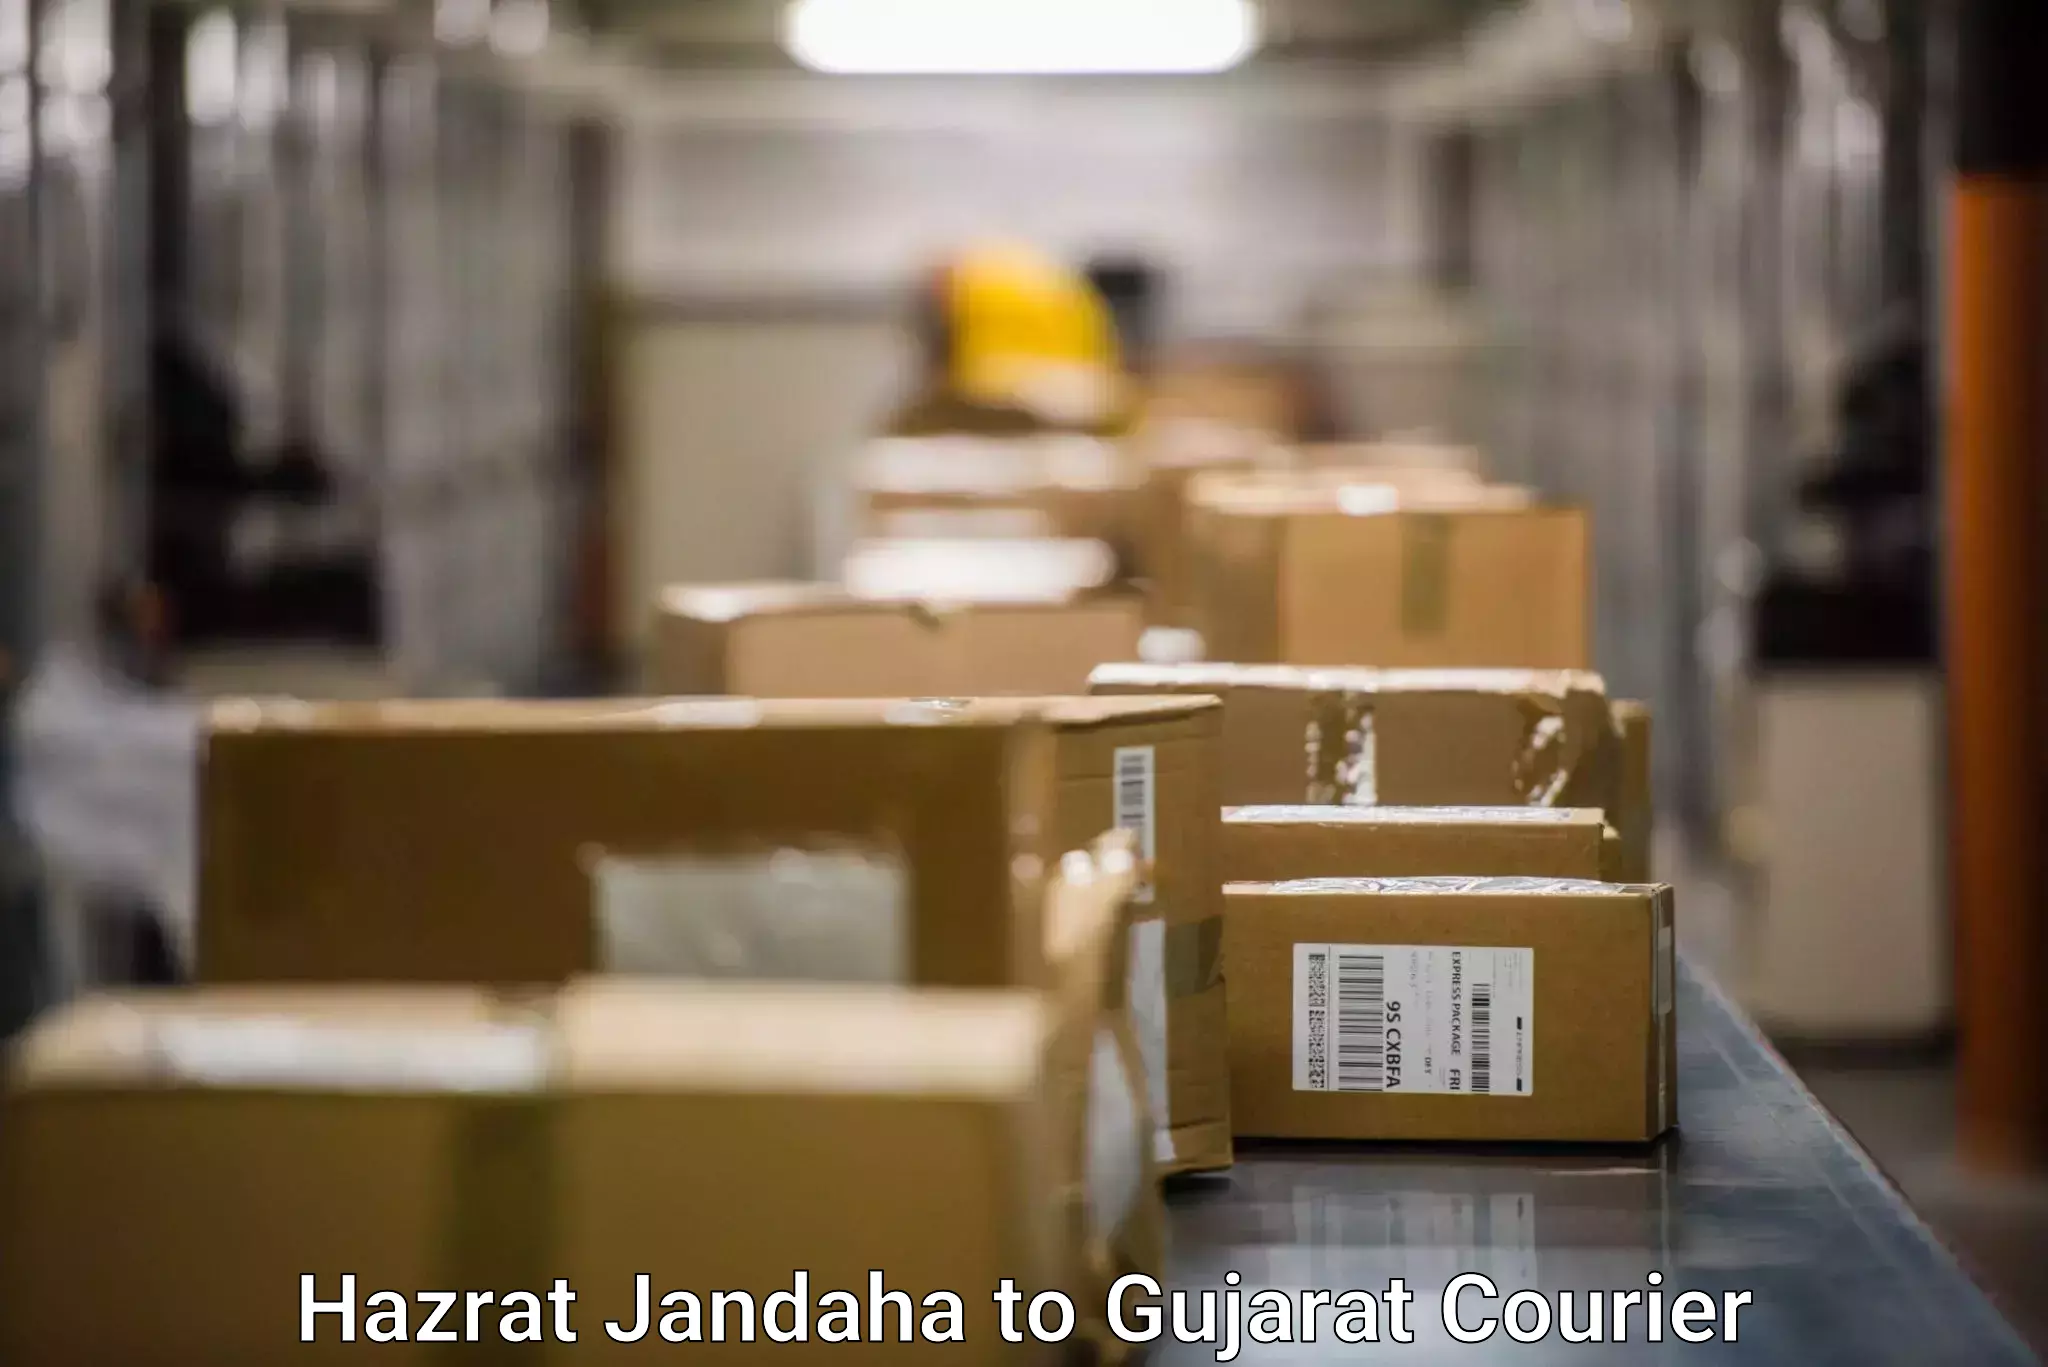 Fragile item shipping Hazrat Jandaha to Gujarat